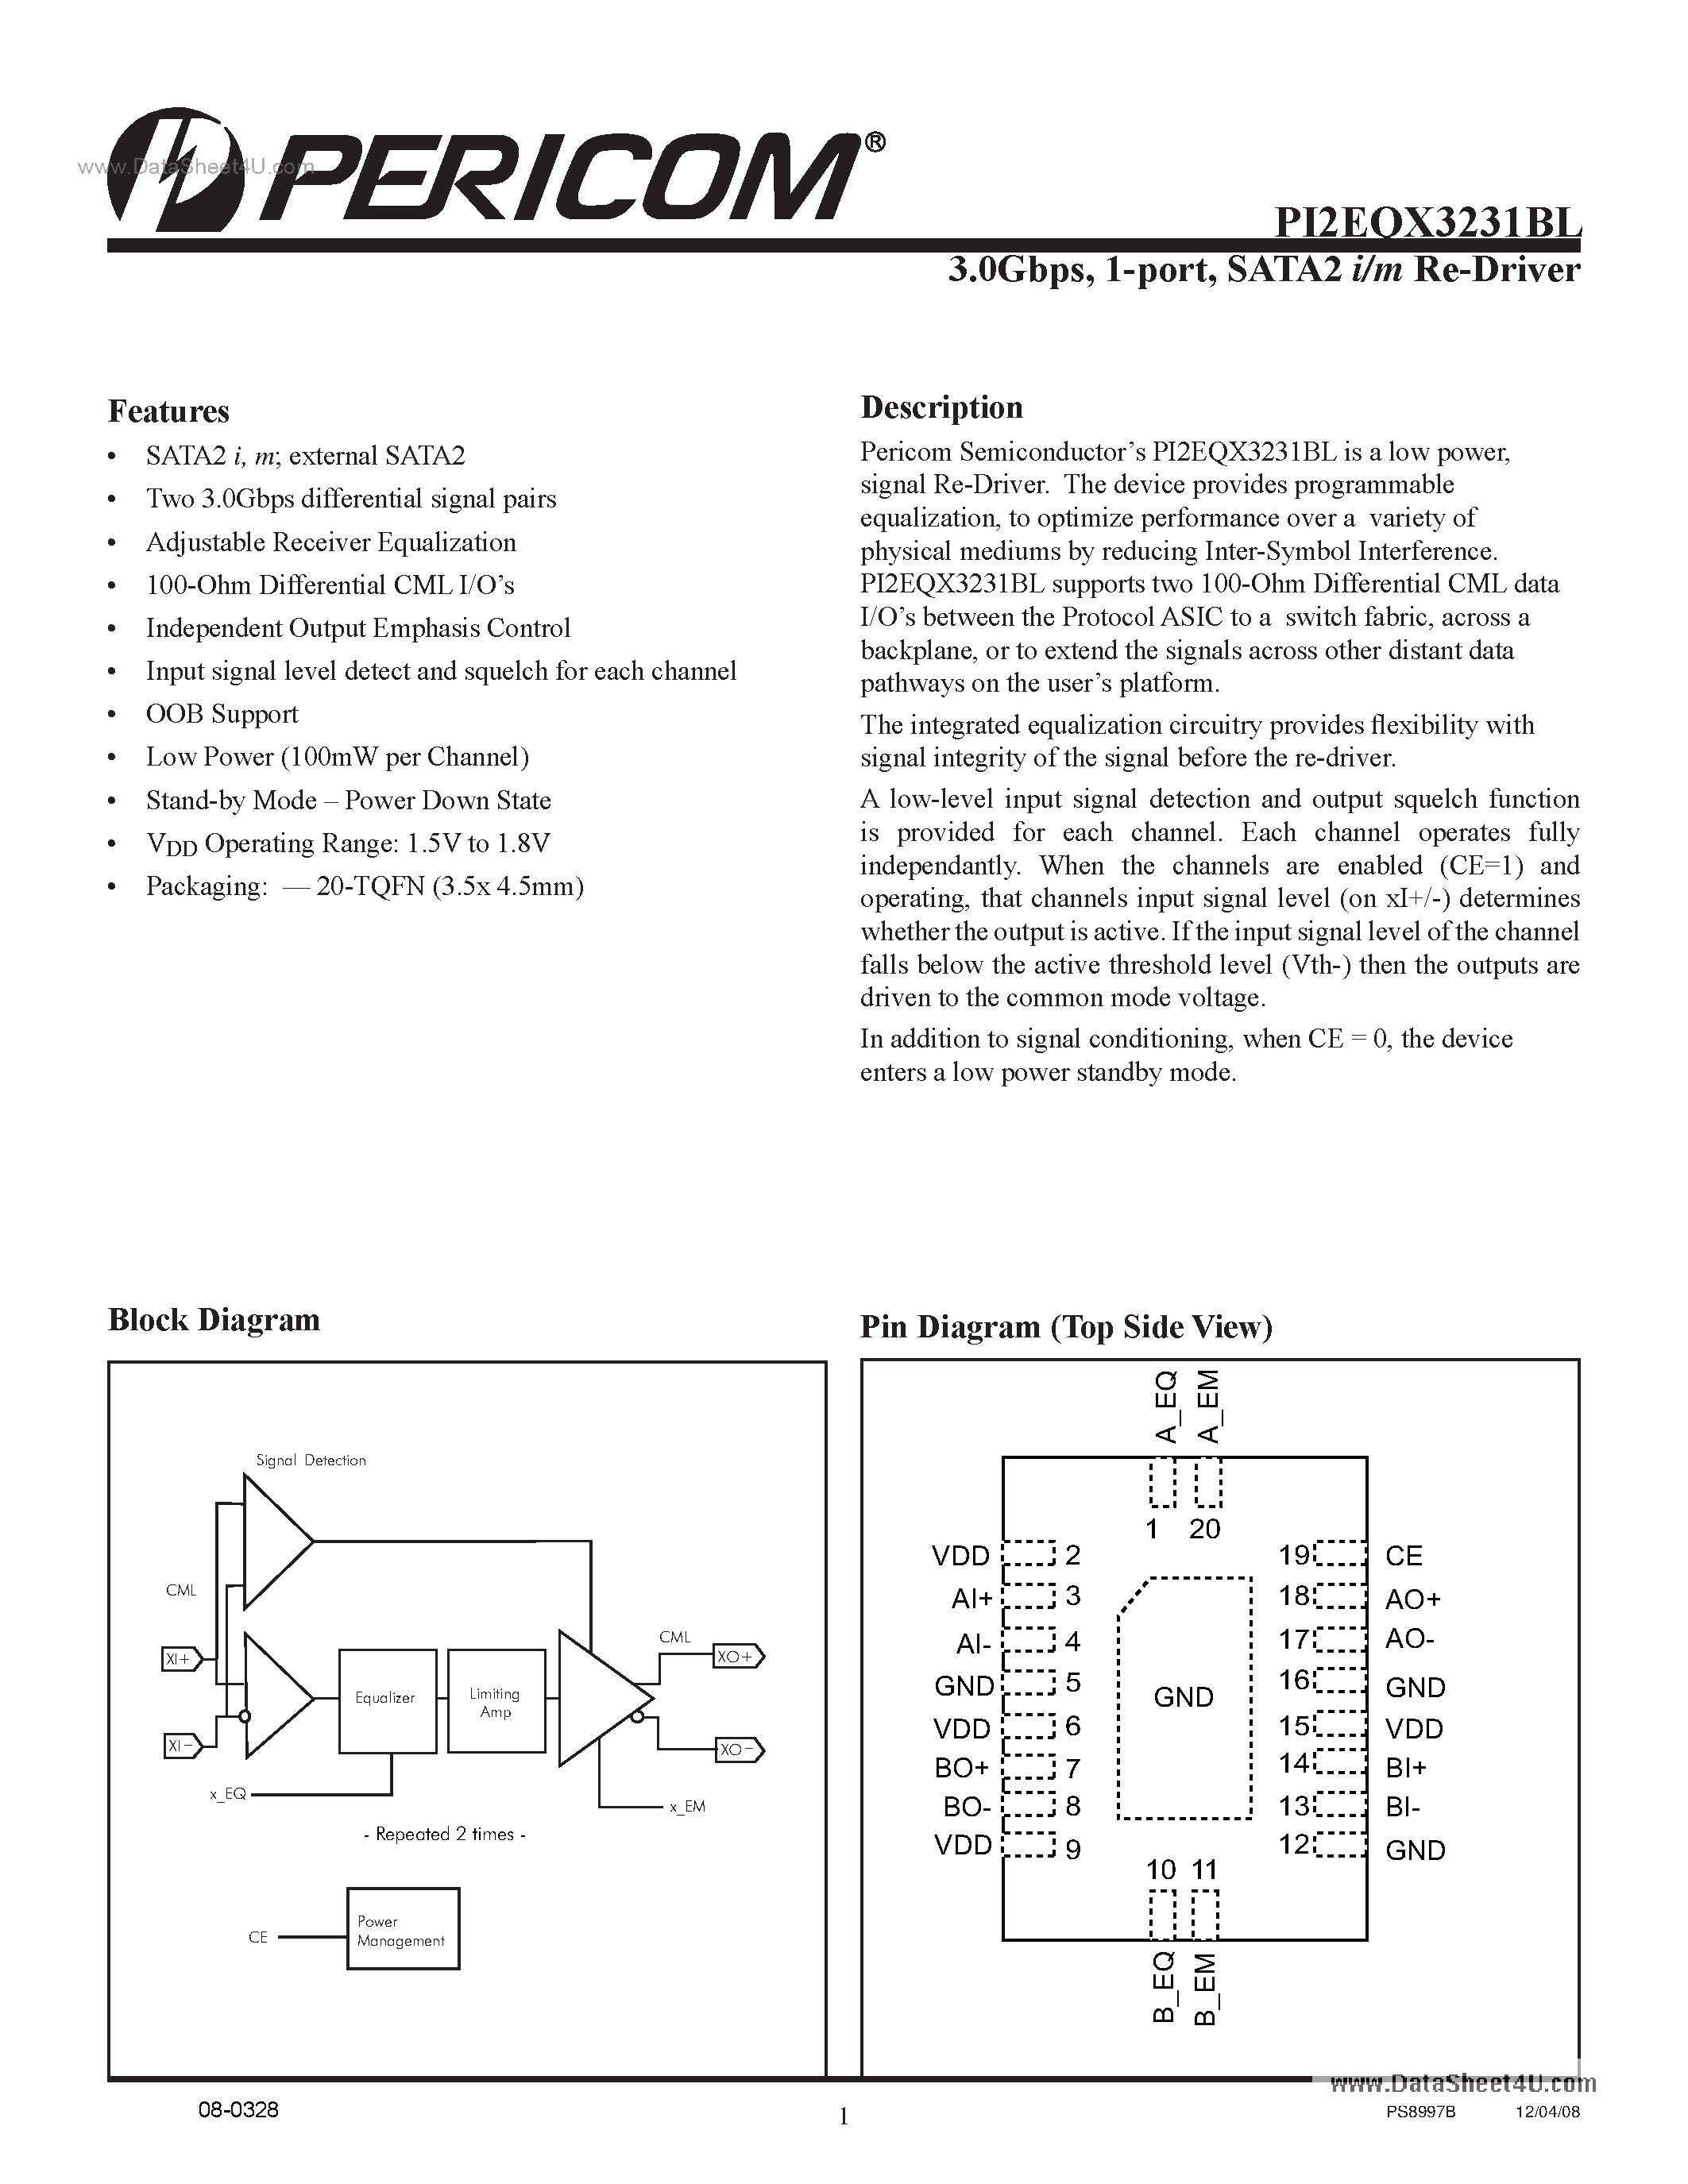 Даташит PI2EQX3231BL - 1-port SATA2 I/m ReDriver страница 1